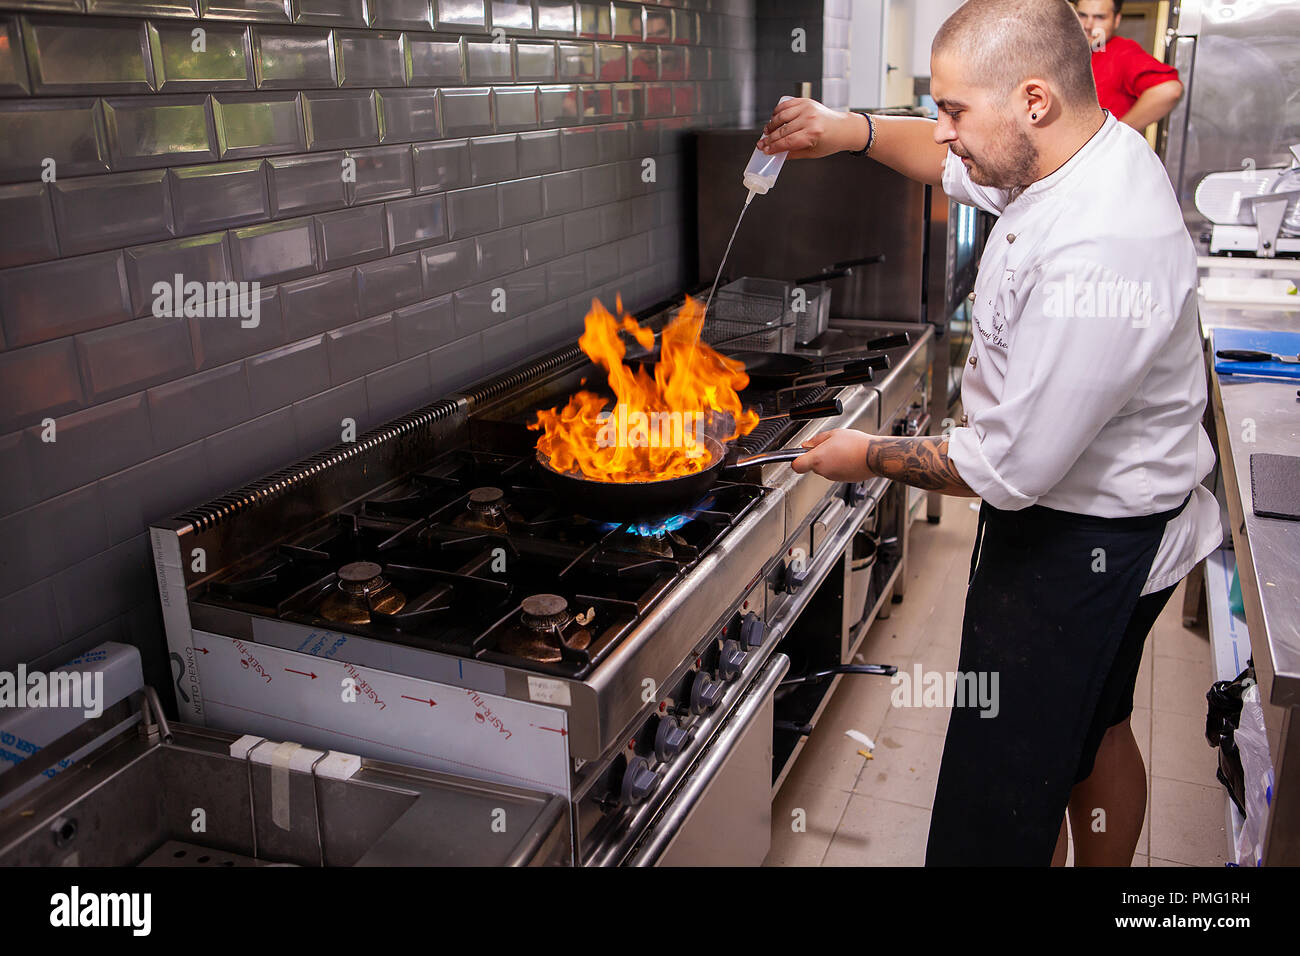 Männer kochen, flambiert seafood restaurant am Herd in der Küche. Leckeres Essen Stockfoto